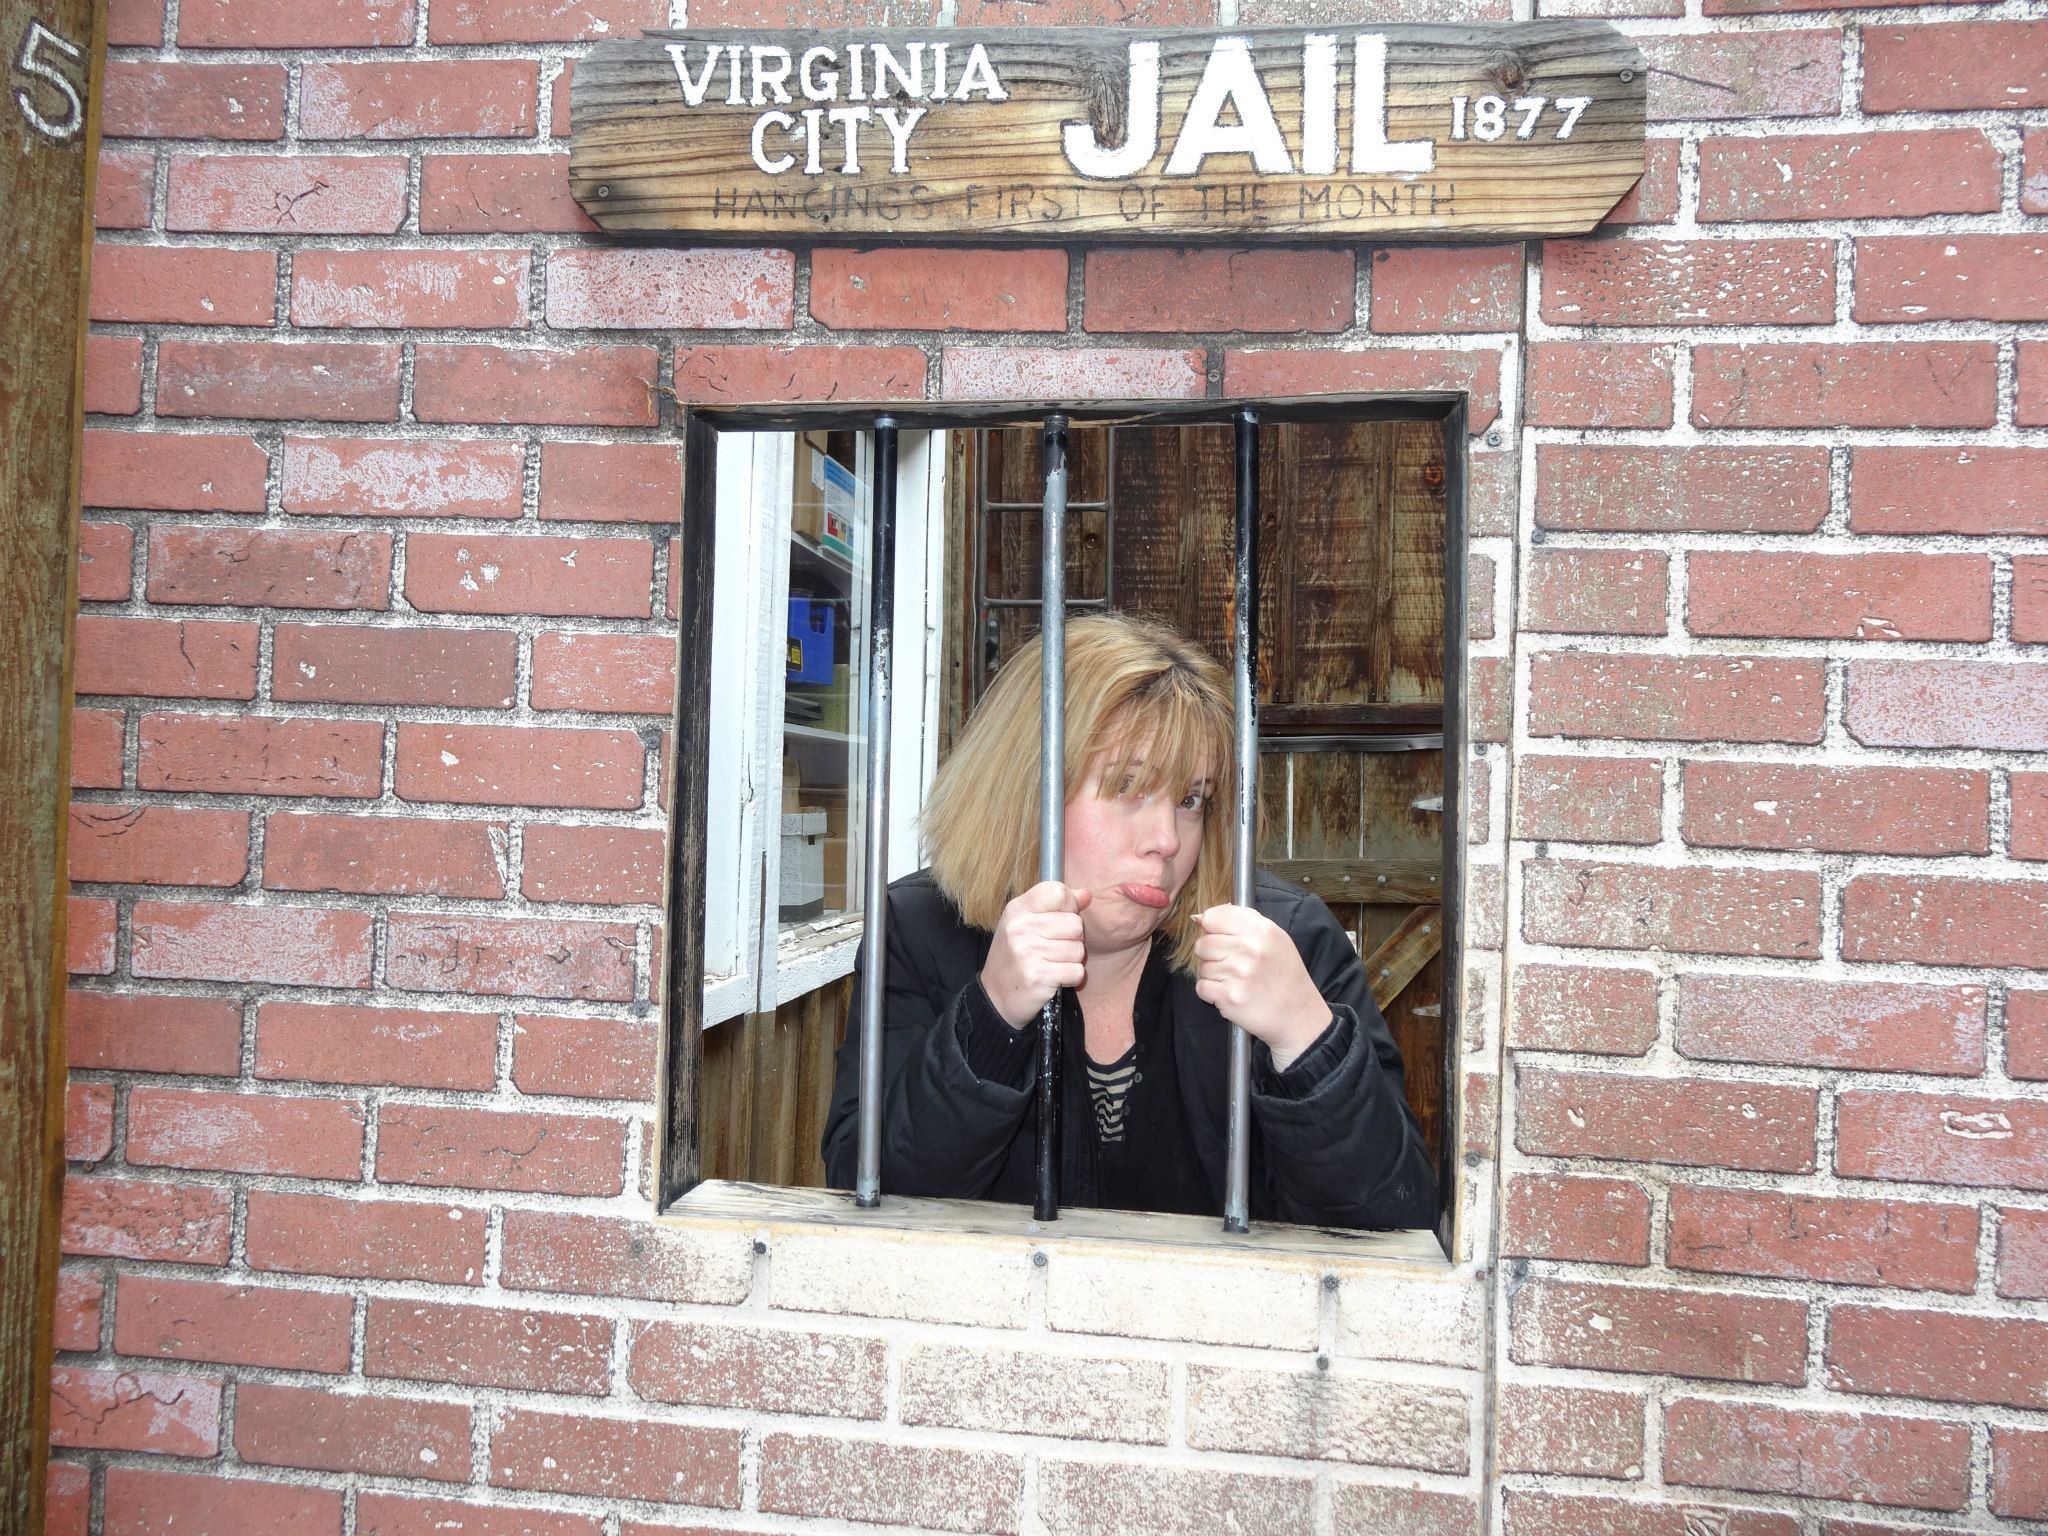 Virginia City jail 